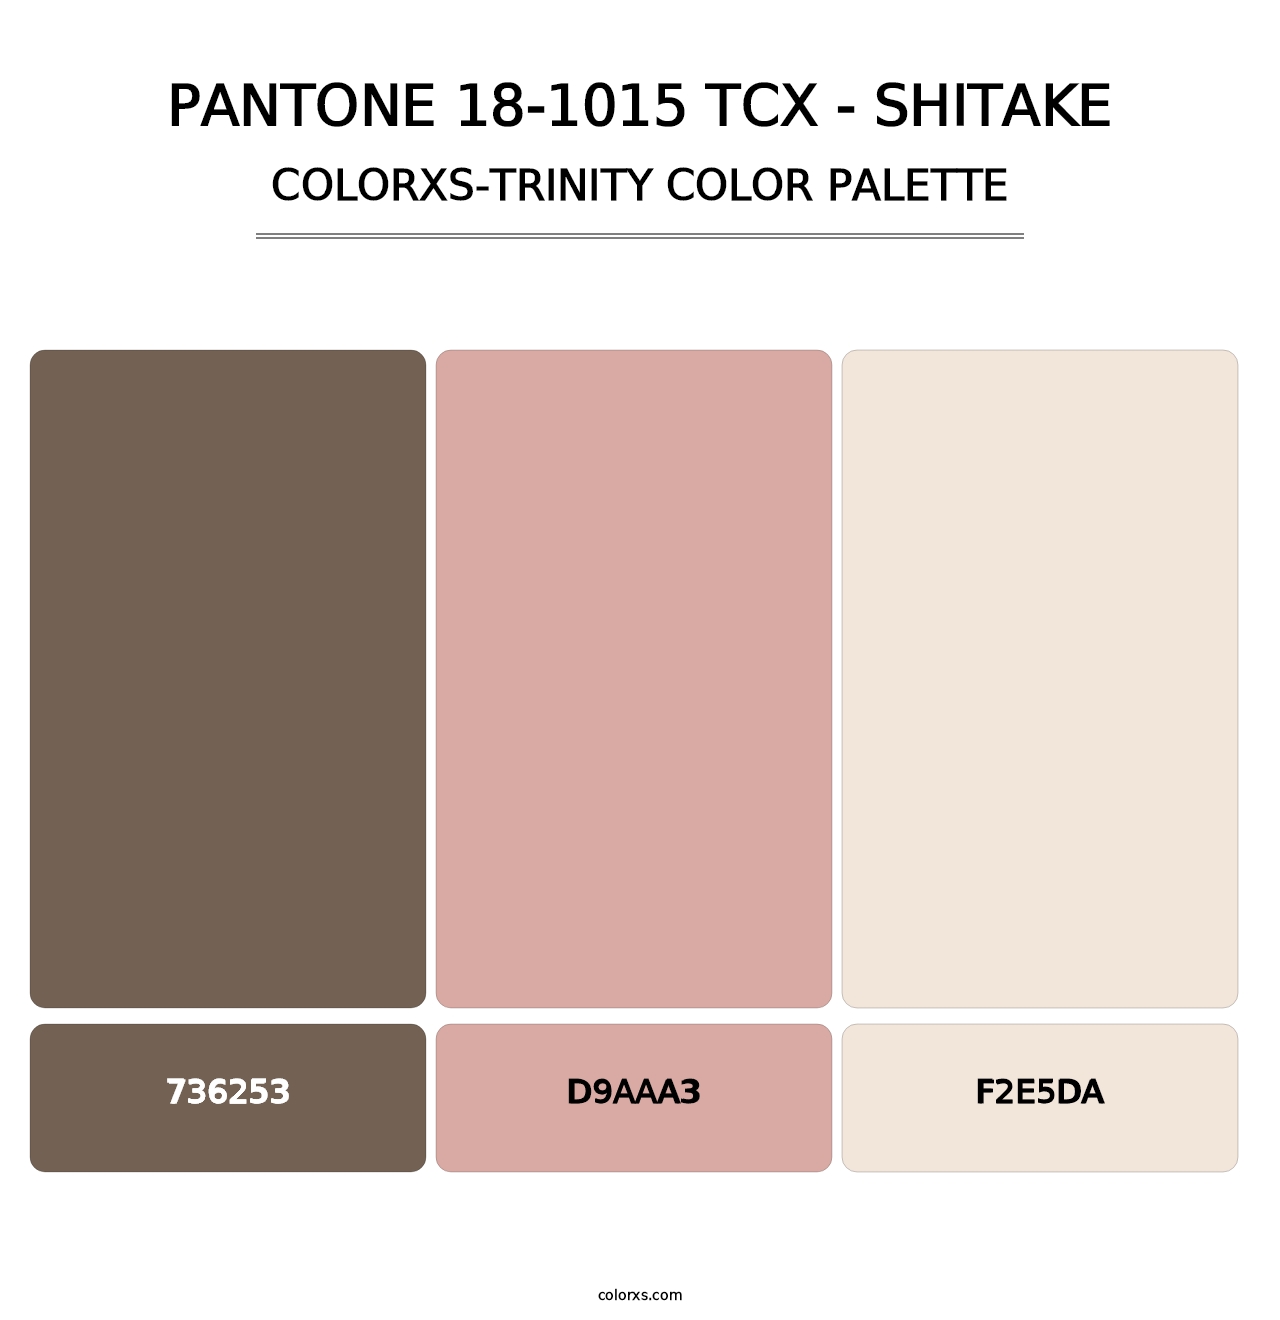 PANTONE 18-1015 TCX - Shitake - Colorxs Trinity Palette